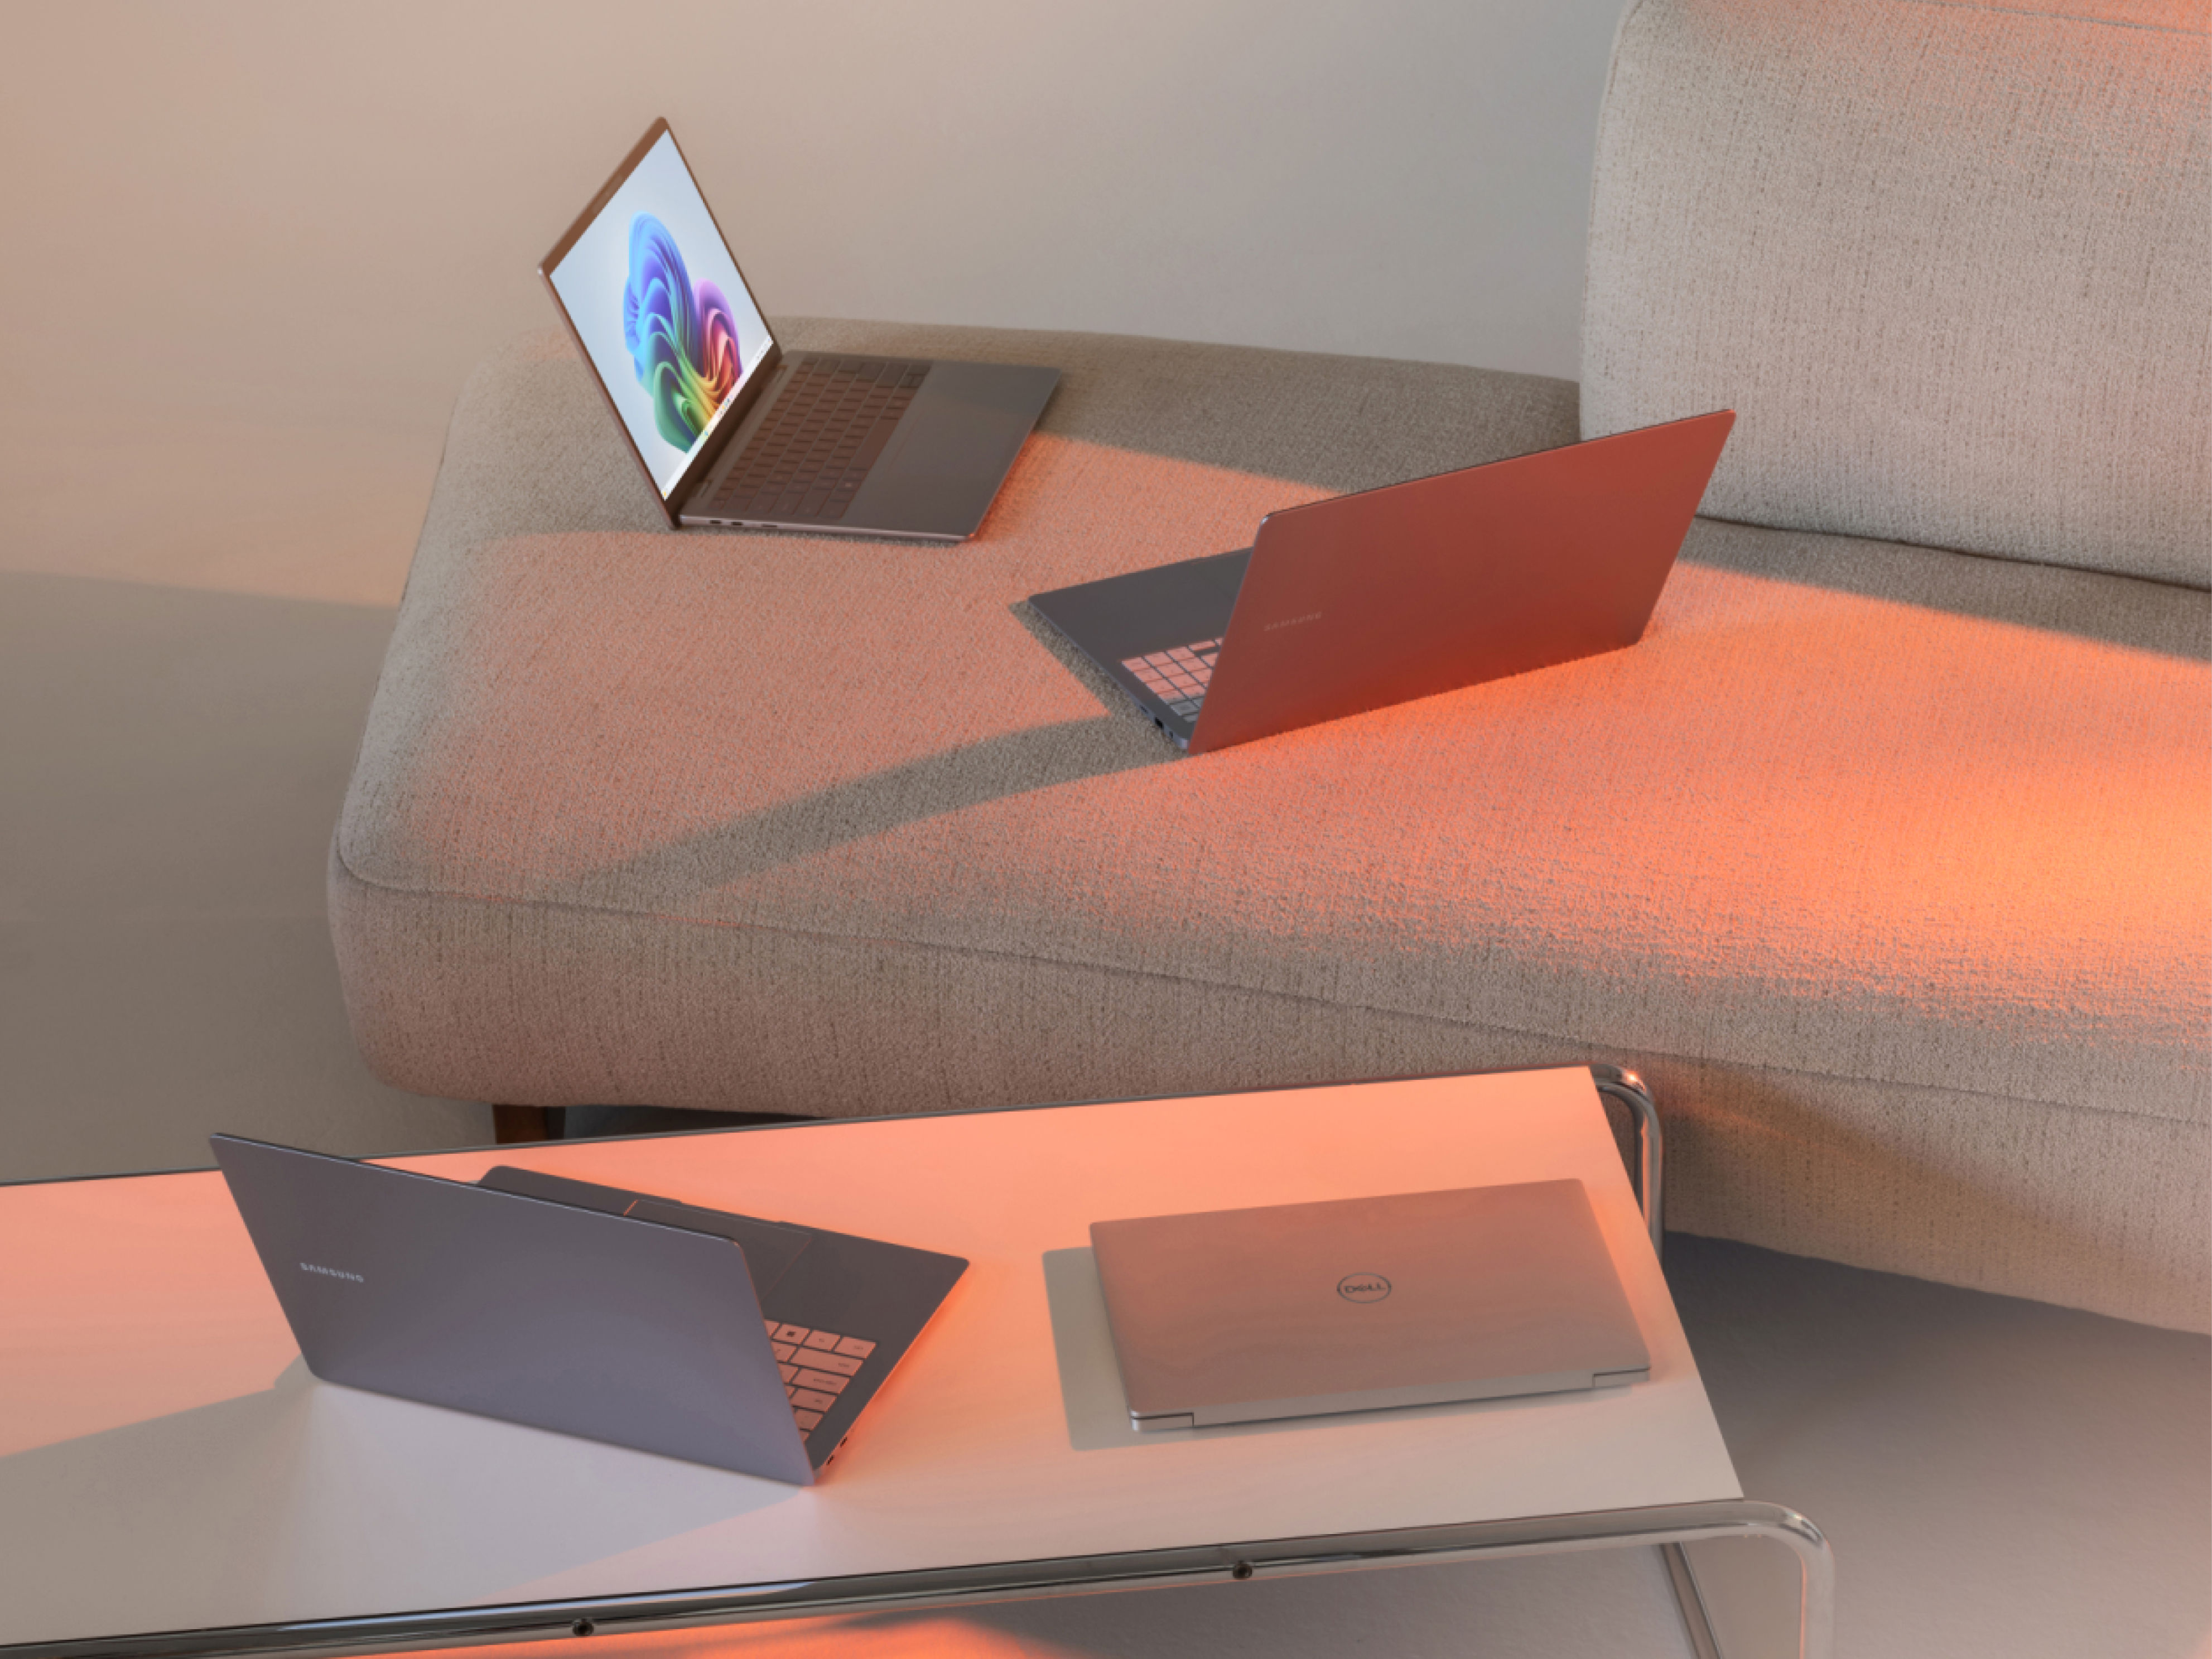 Mehrere Laptops auf einem Couchtisch bei einer Couch